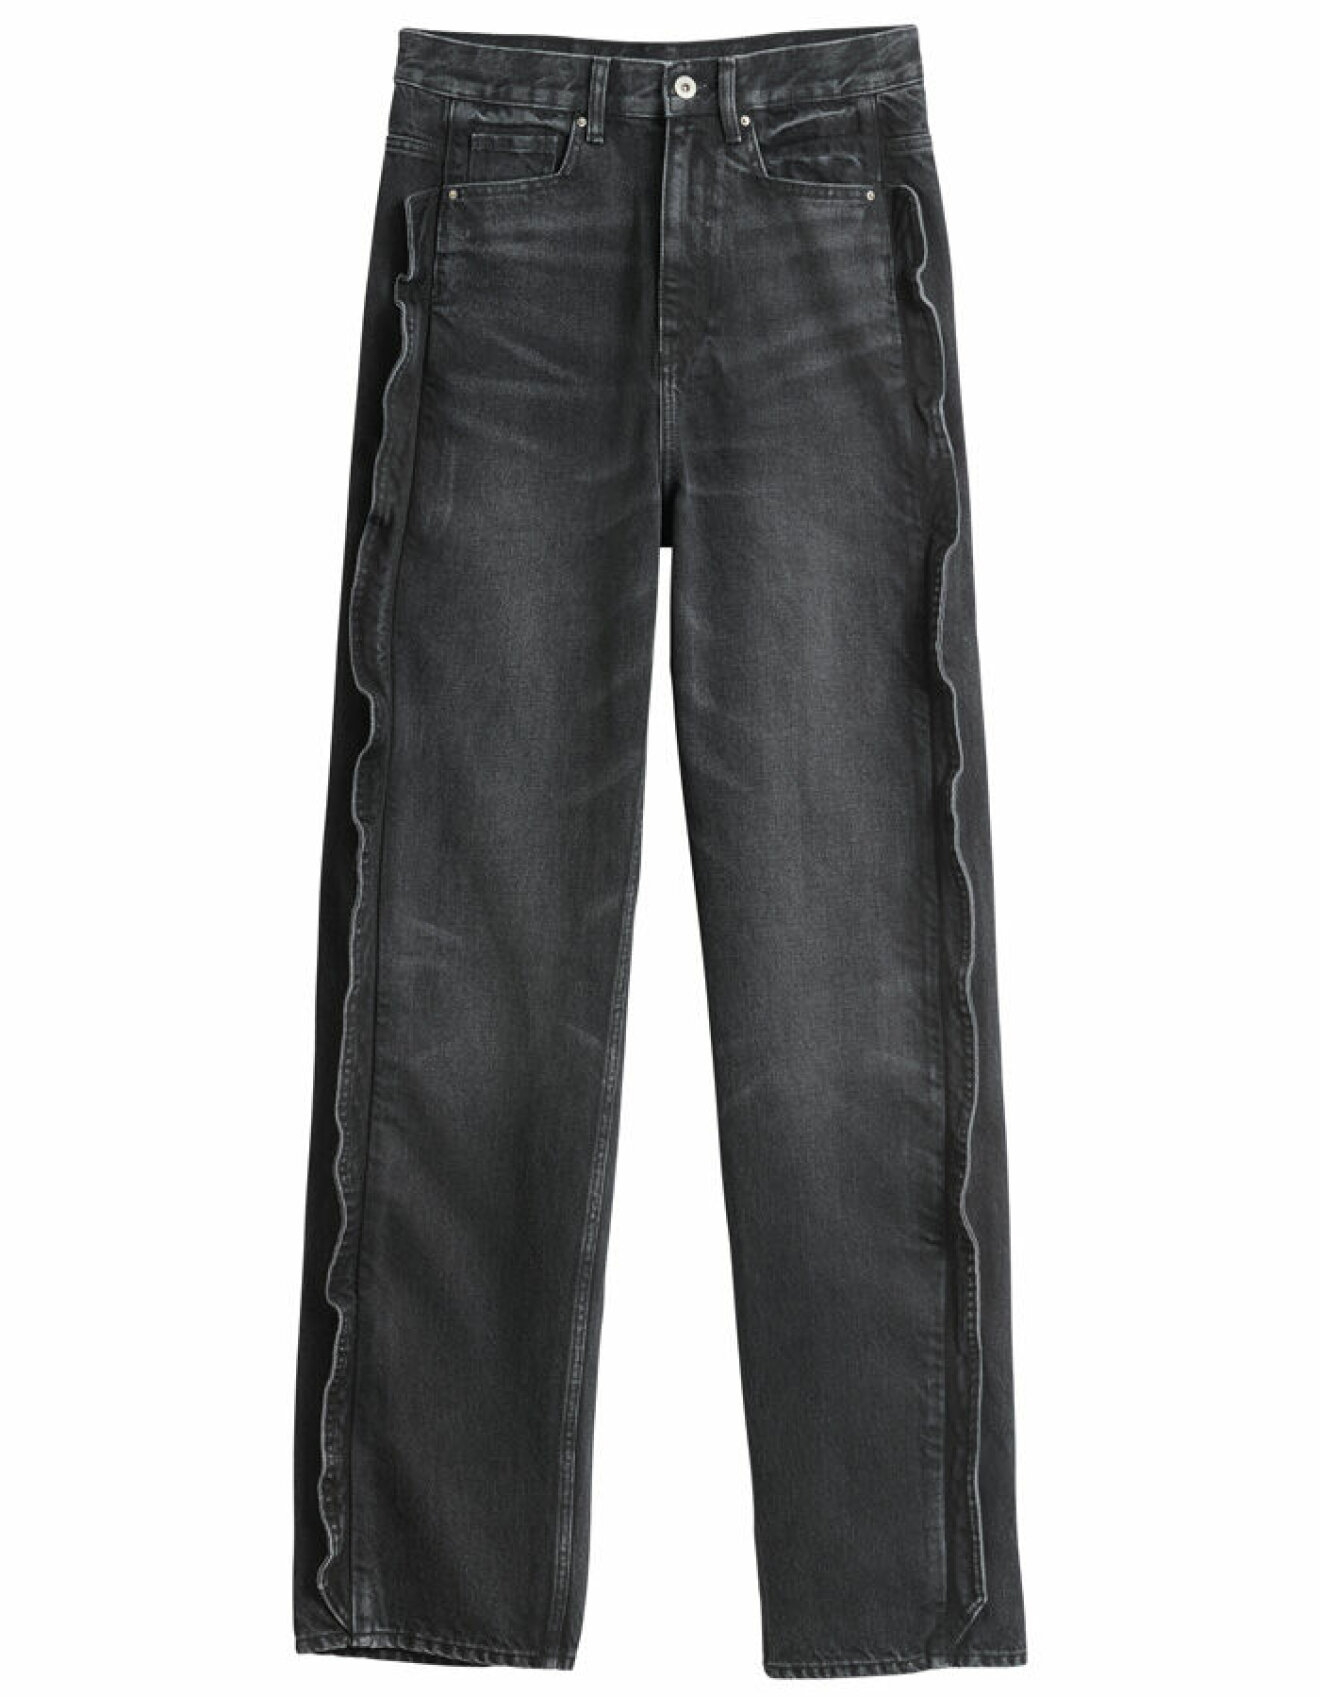 H&amp;M Innovation Story Cherish Waste – grå tvättade jeans med låg midja, lös passform och volanger